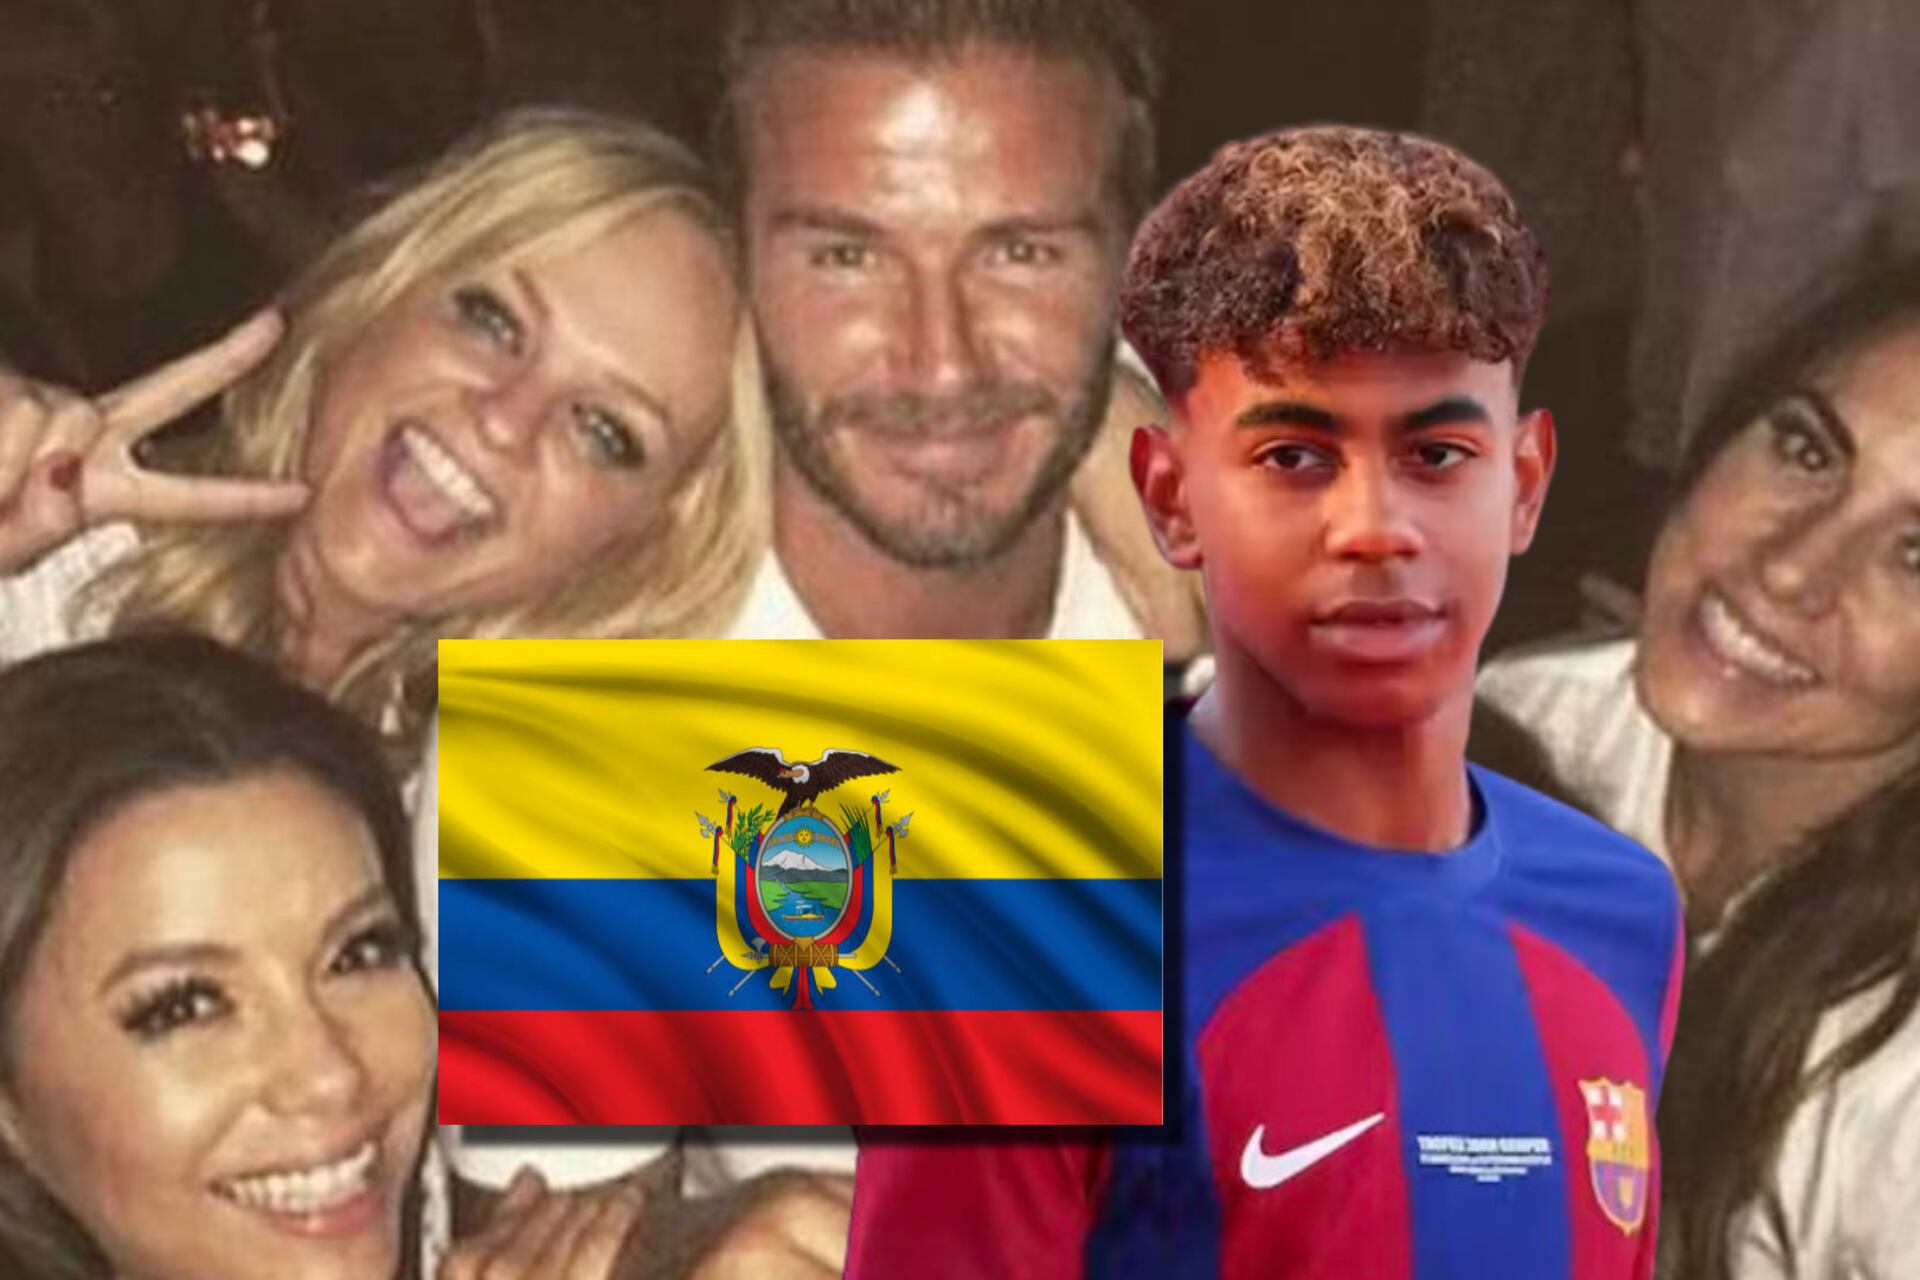 El ecuatoriano que es fiestero, vale 13 millones y Barça lo quiso por Yamal